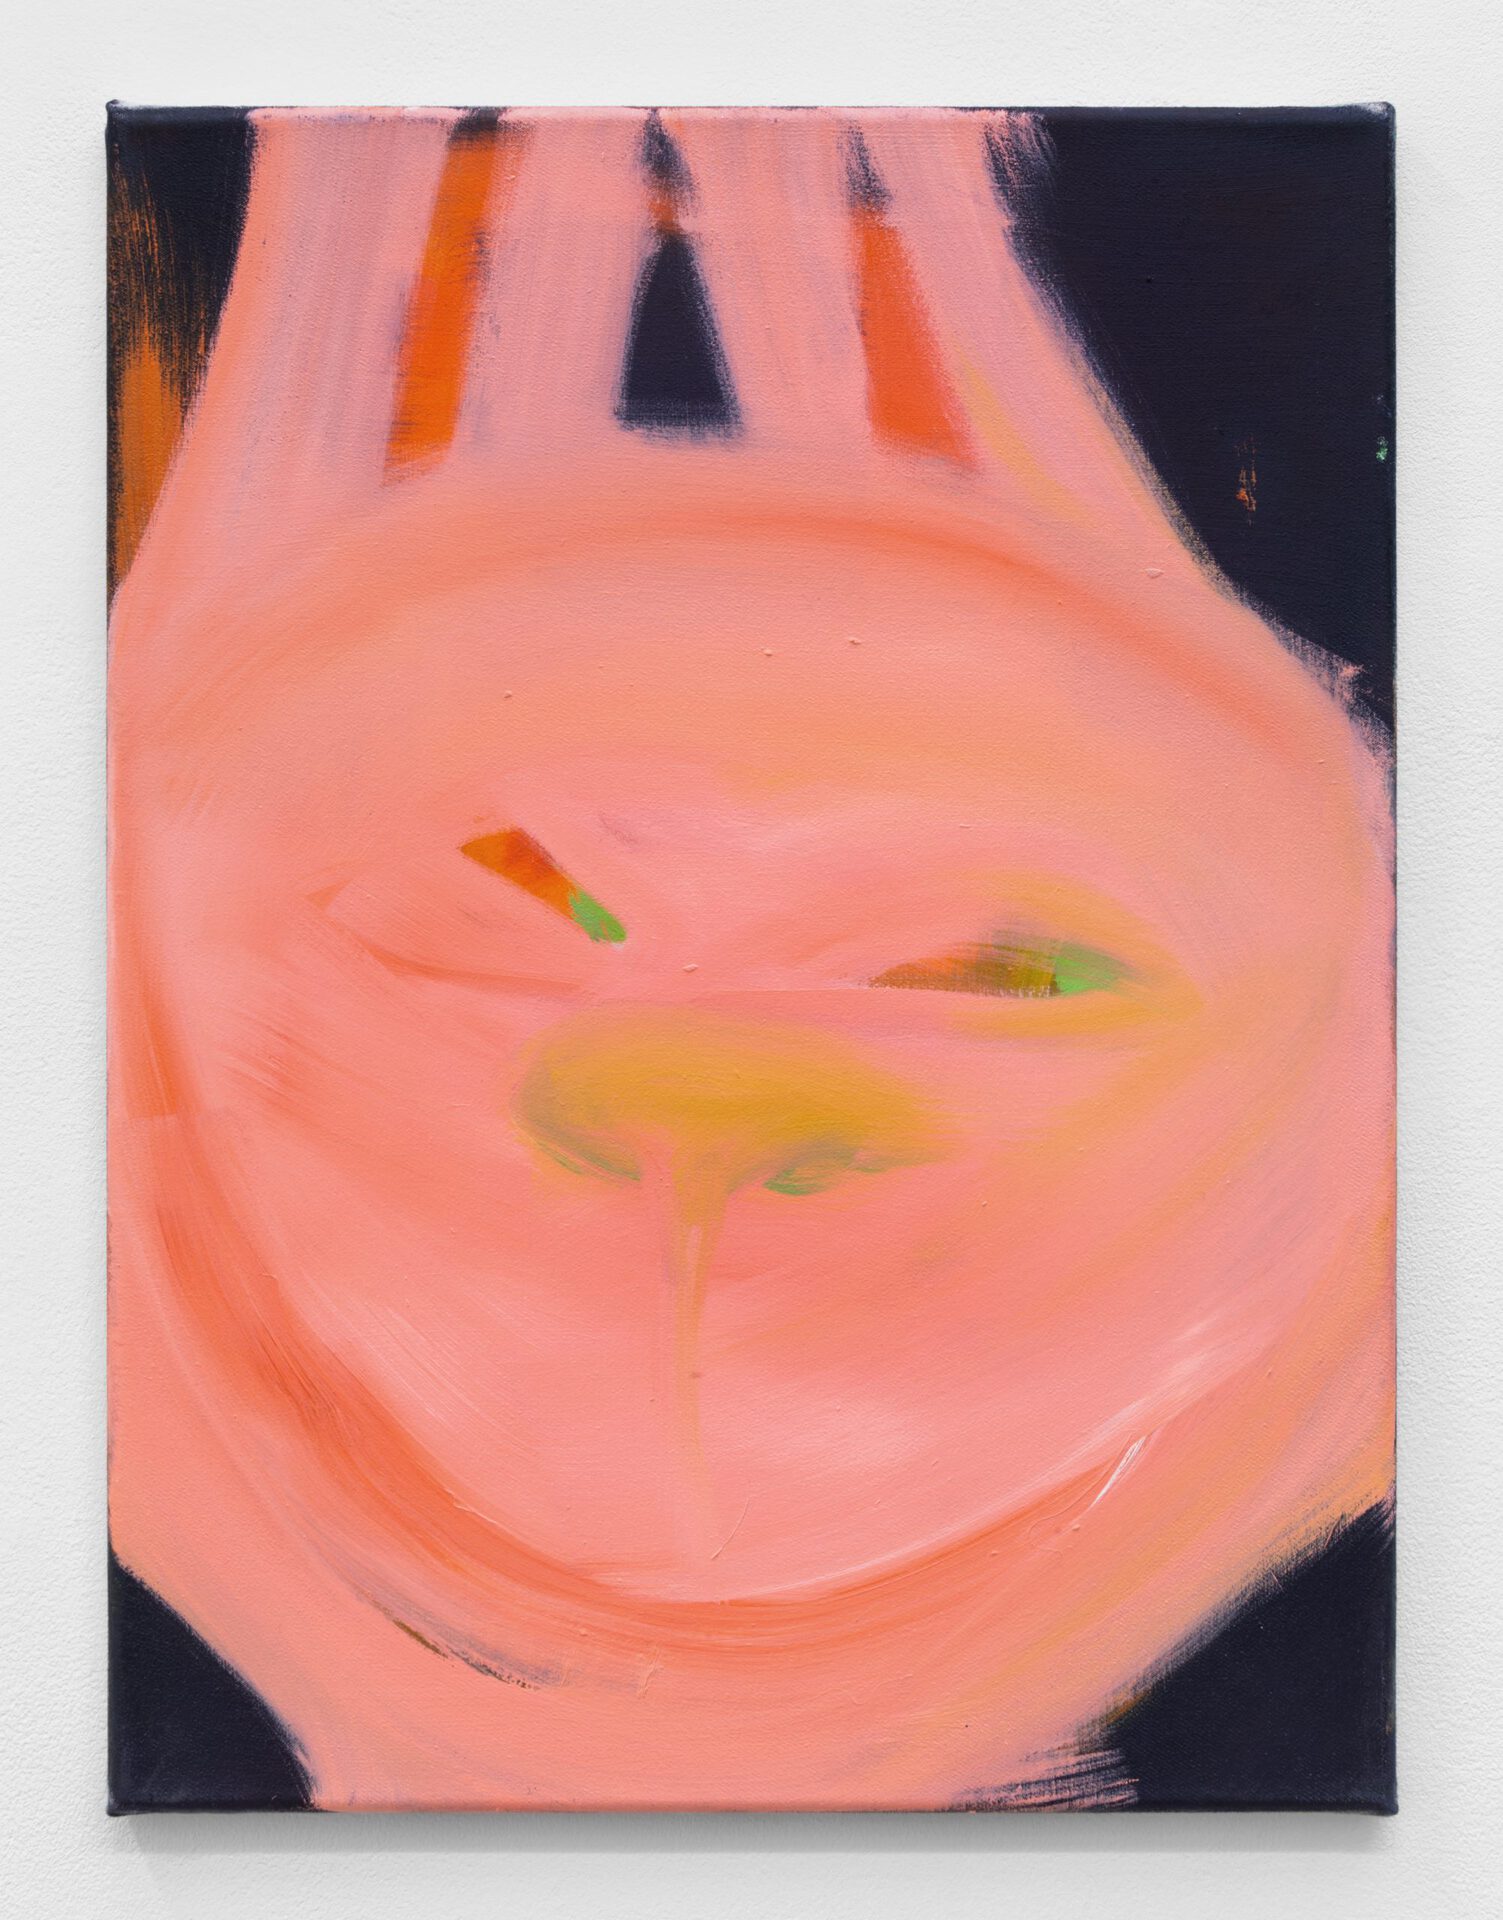 Aneta Kajzer, GRIN, oil on canvas, 2020, 60 x 45 cm